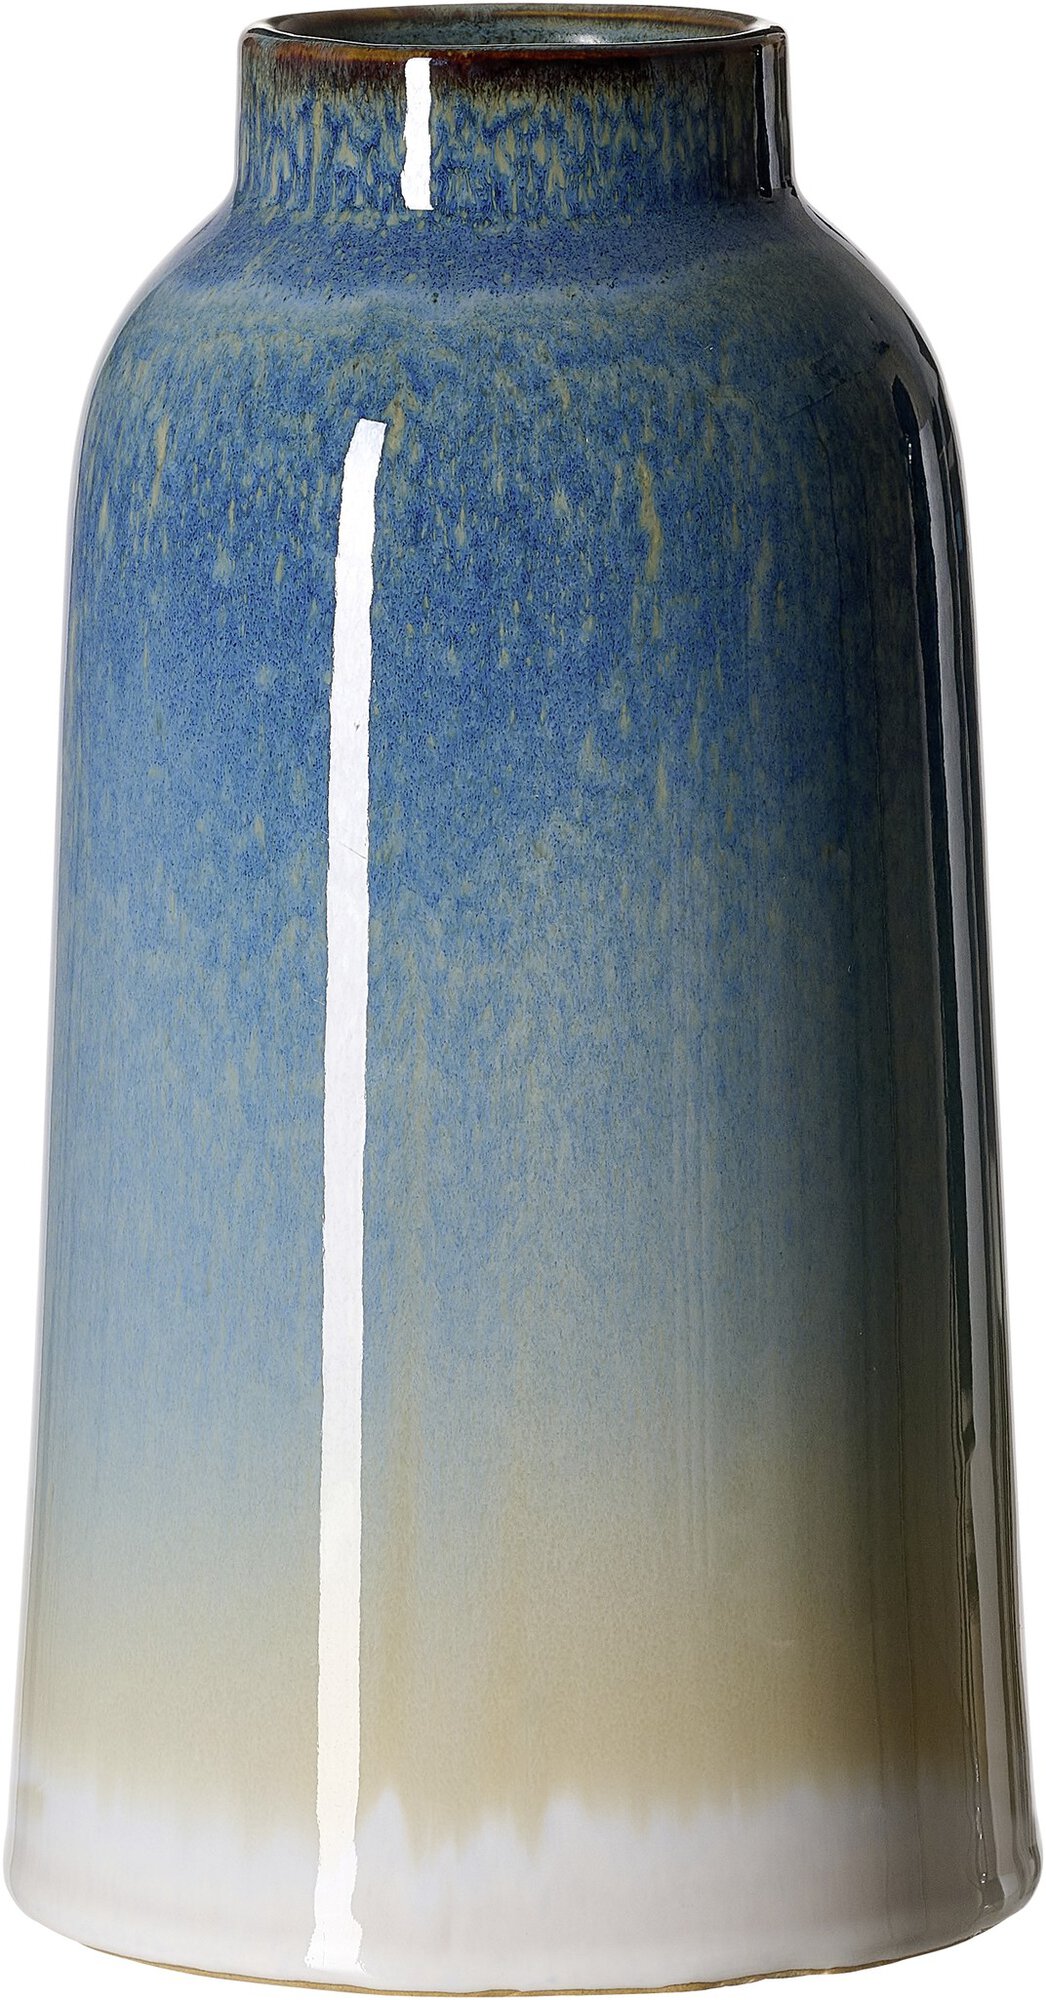 Vase Leria 24 cm